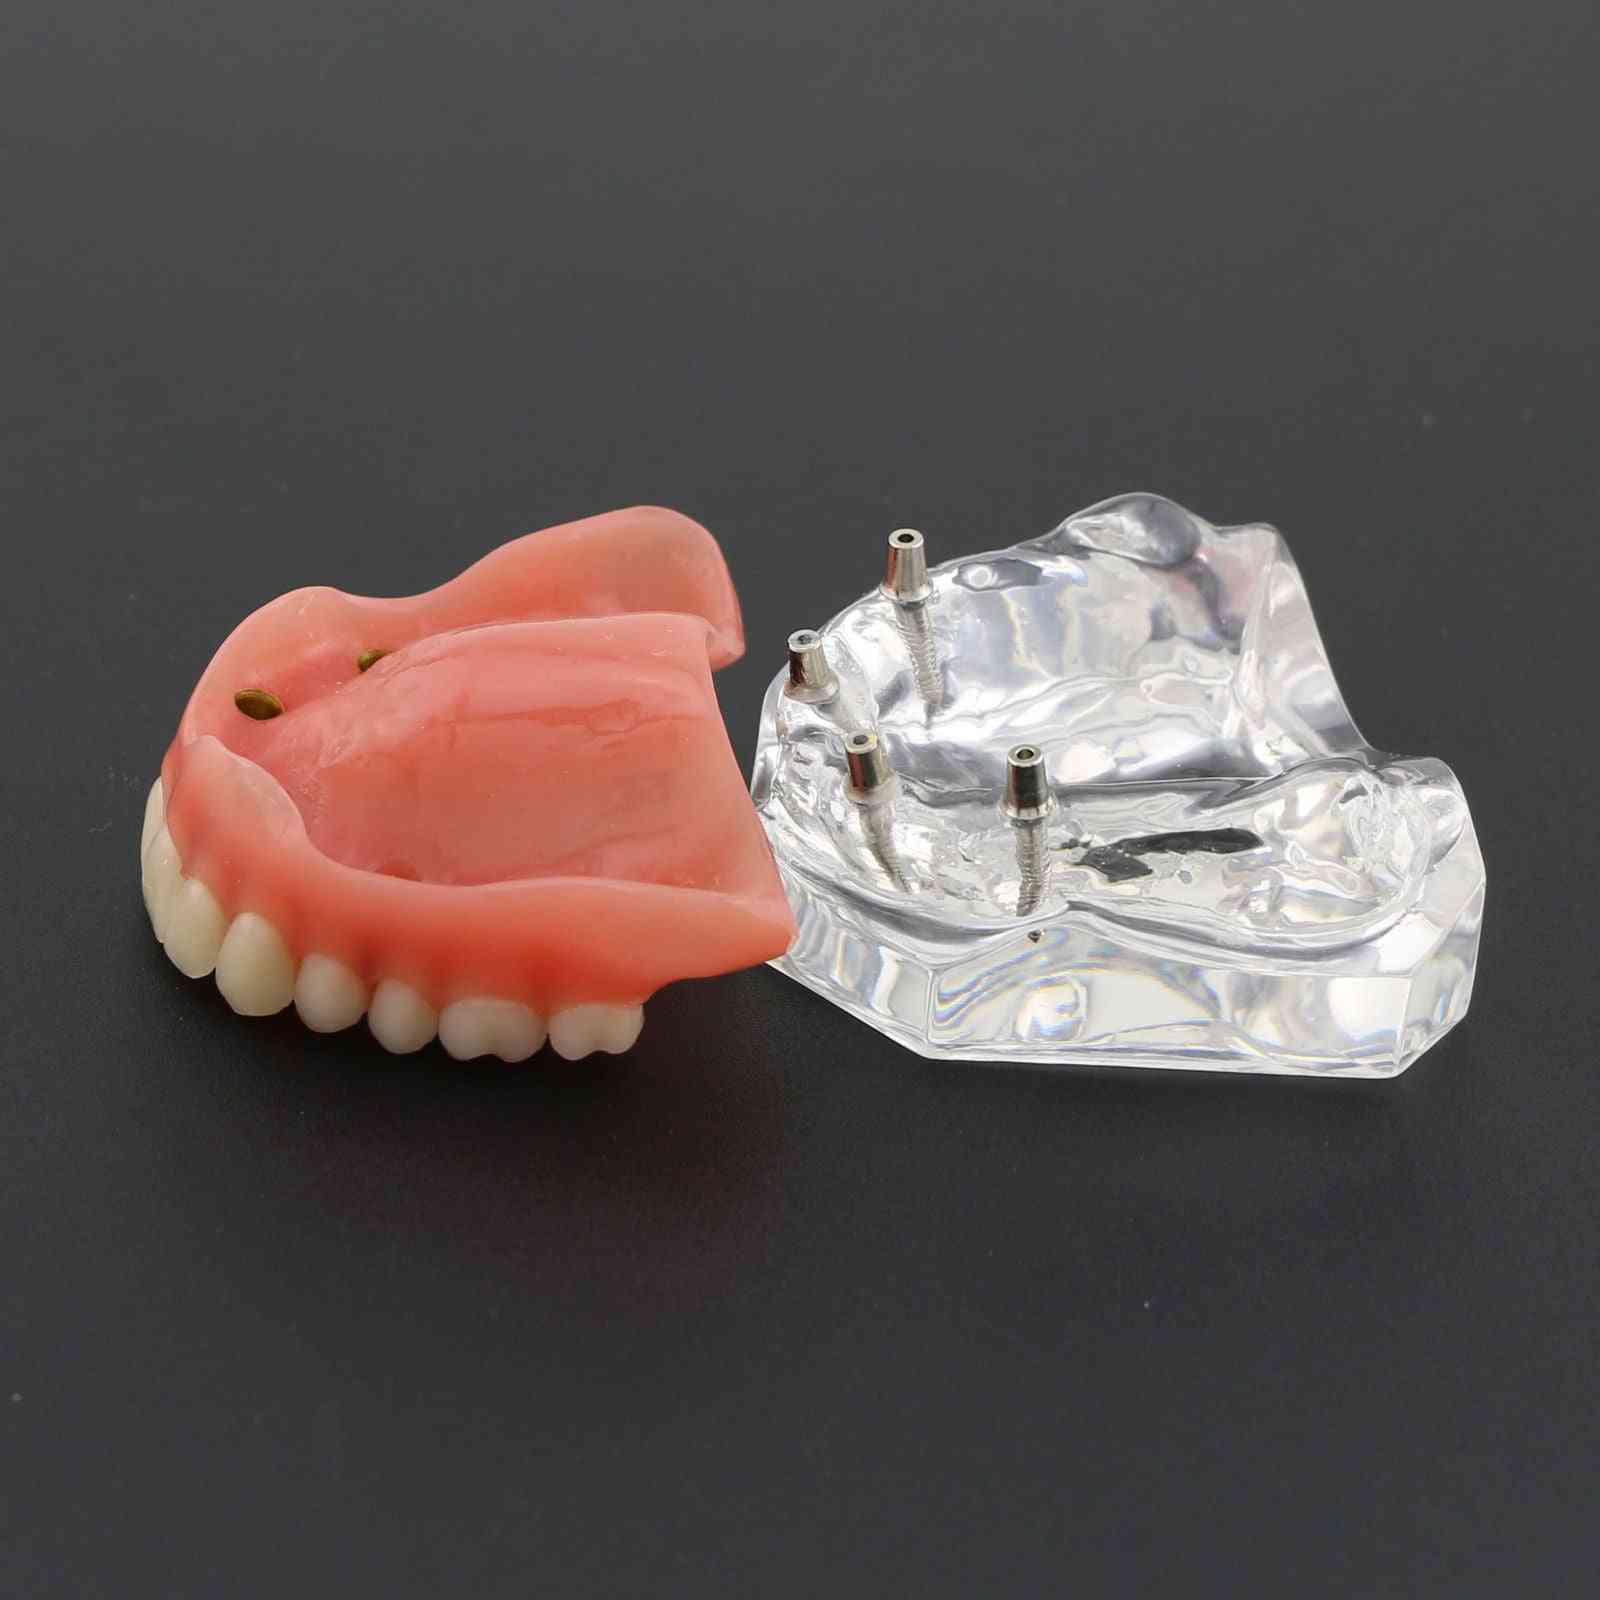 1 pieza sobredentadura superior dental modelo de demostración superior de 4 implantes, modelo de dientes